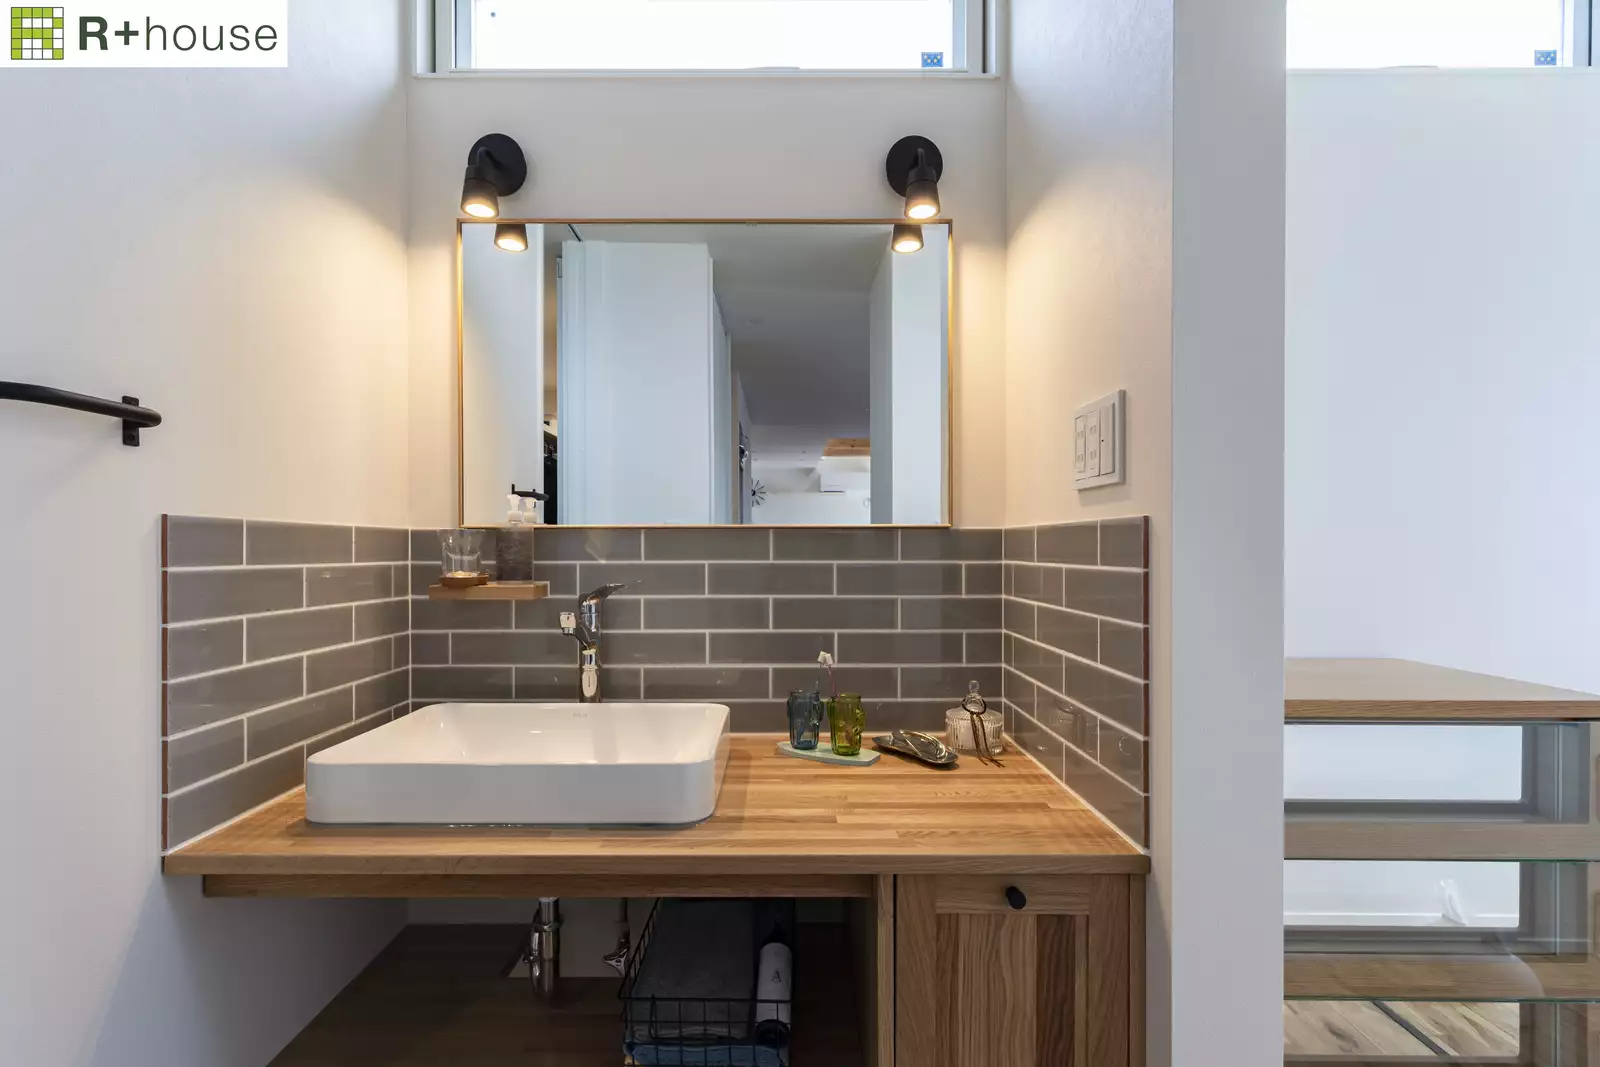 R+houseの物件の洗面所の写真です。白い壁の空間にグレーのタイルを張り、木のカウンターの上に白いボウルの洗面台を設けています。